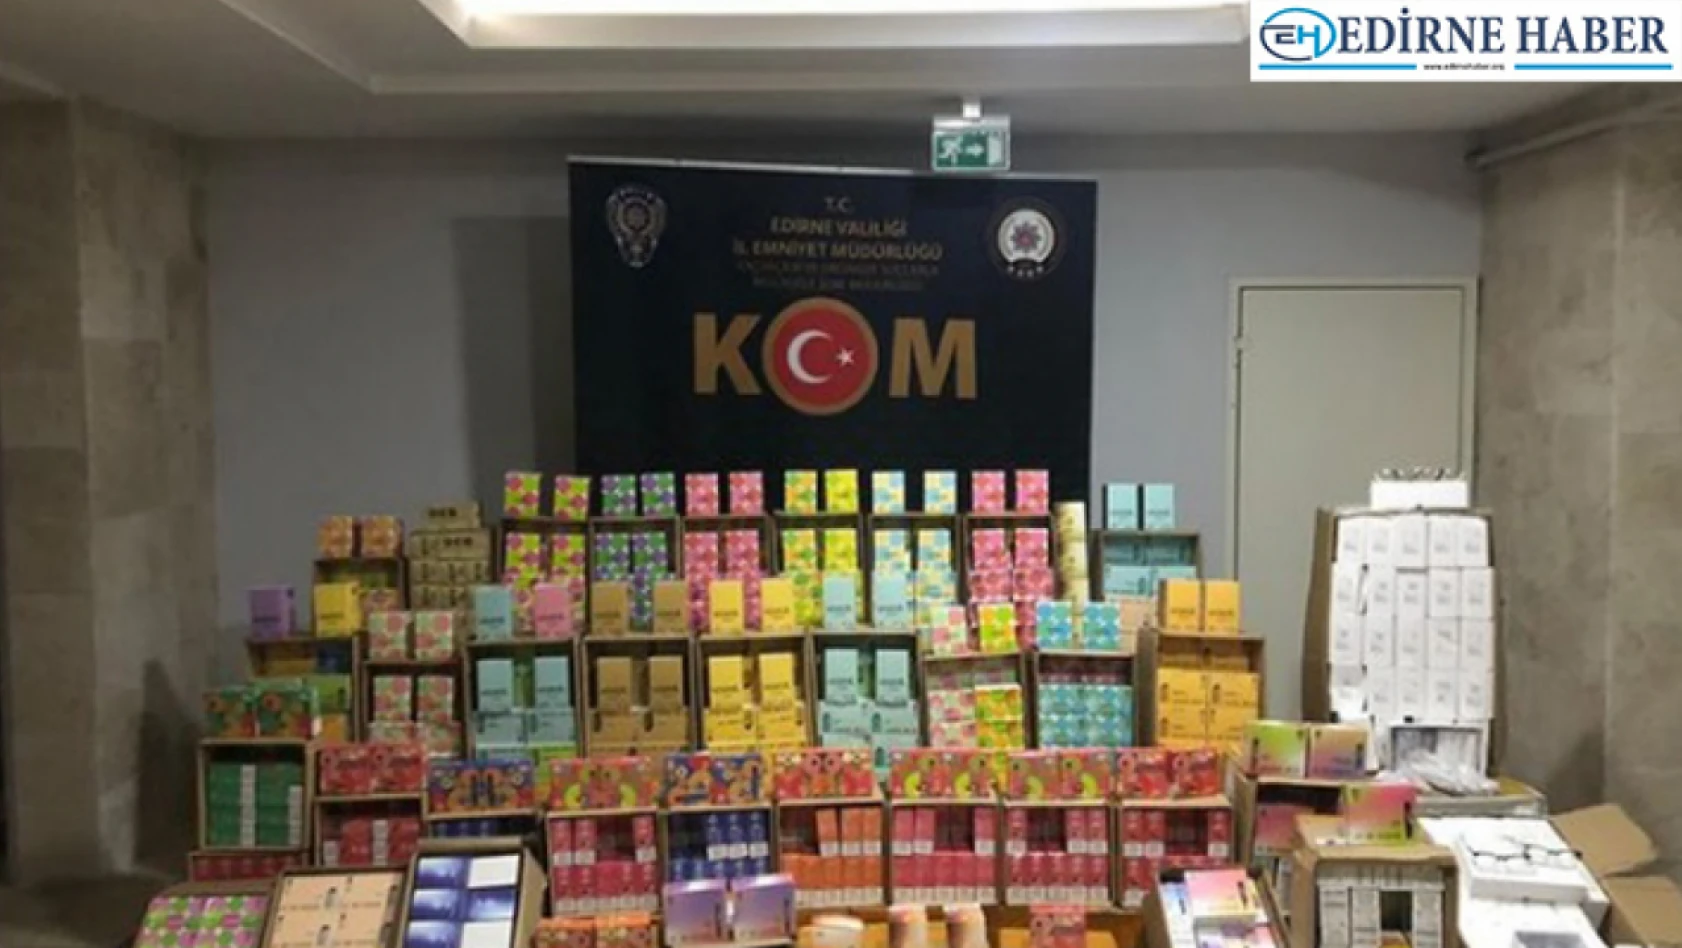 Edirne'de kaçak sigara operasyonu: 1 tutuklama